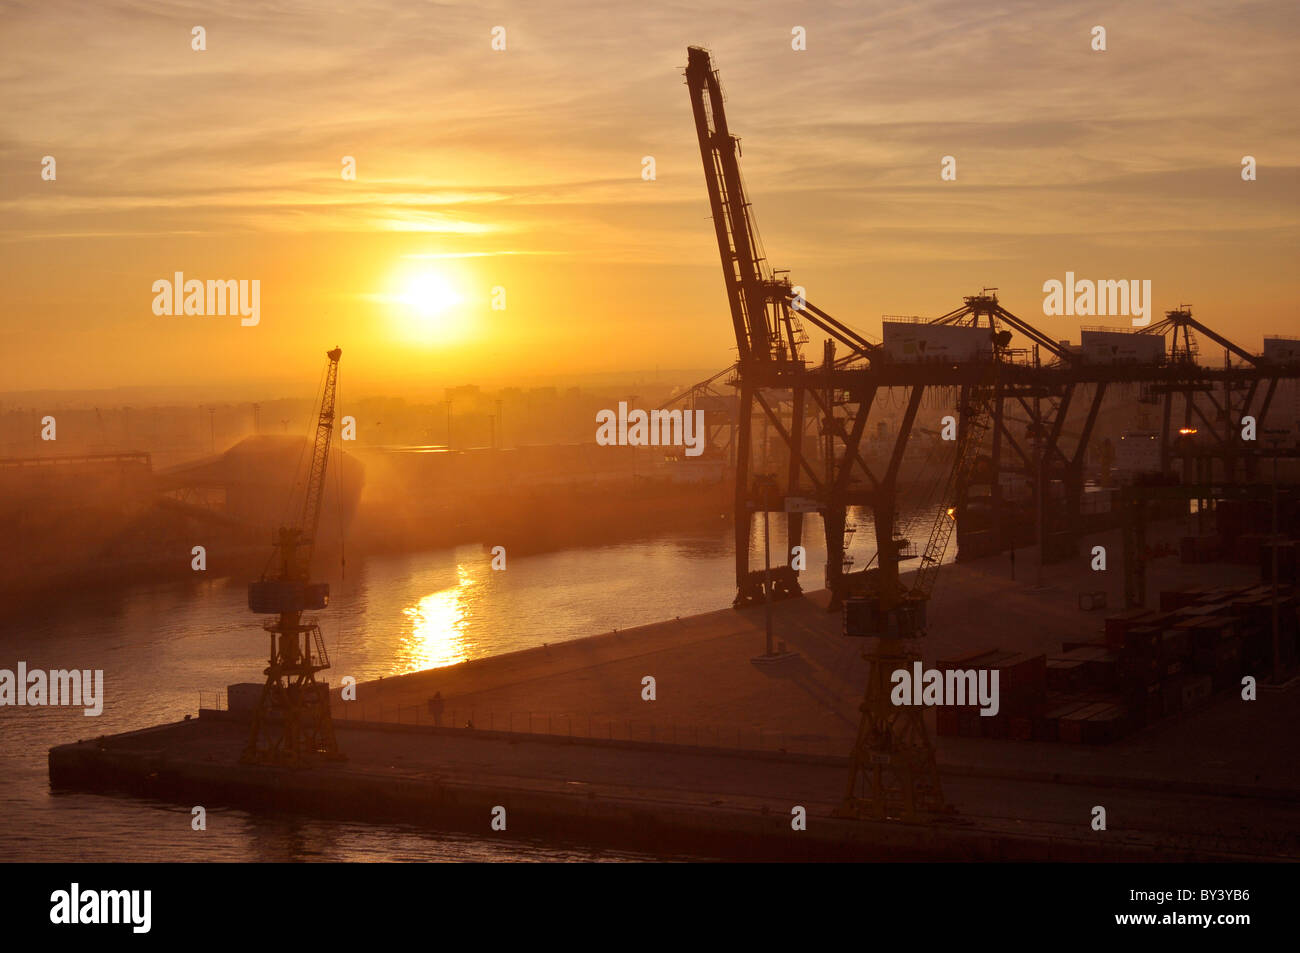 Im Hafen von Casablanca Marokko, Sonnenaufgang, Schiffskräne, Stock Photo